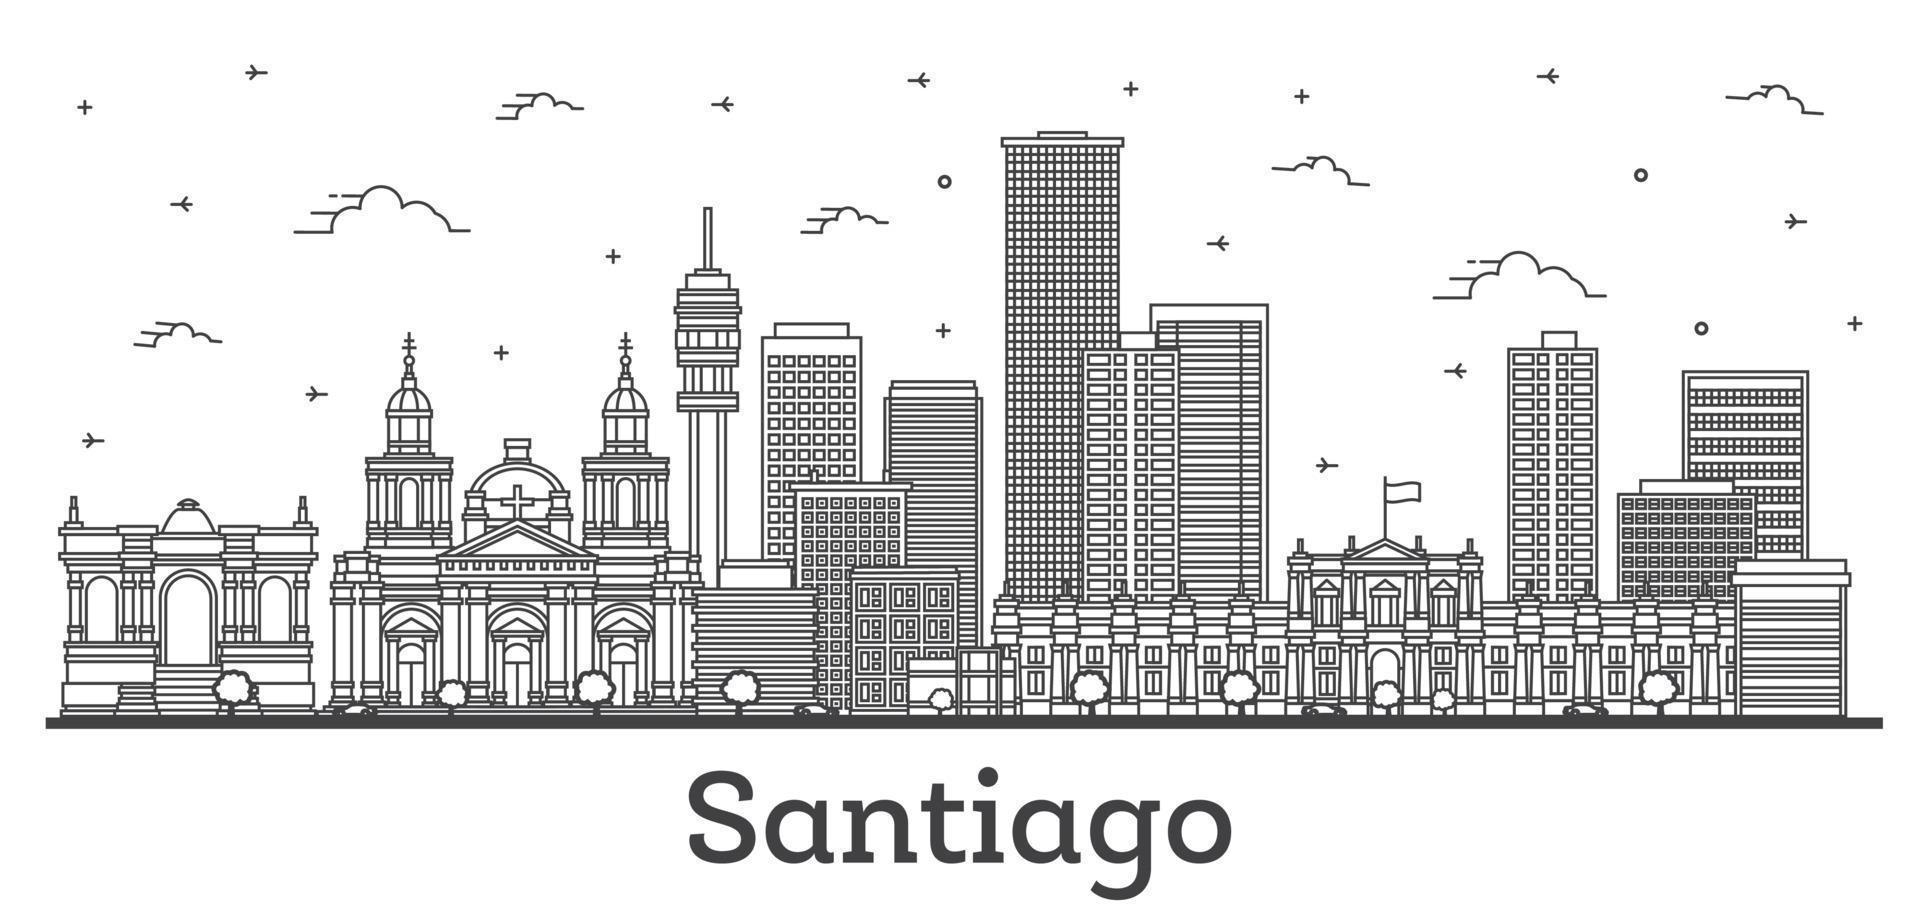 delineie o horizonte da cidade de santiago chile com edifícios modernos e históricos isolados em branco. vetor